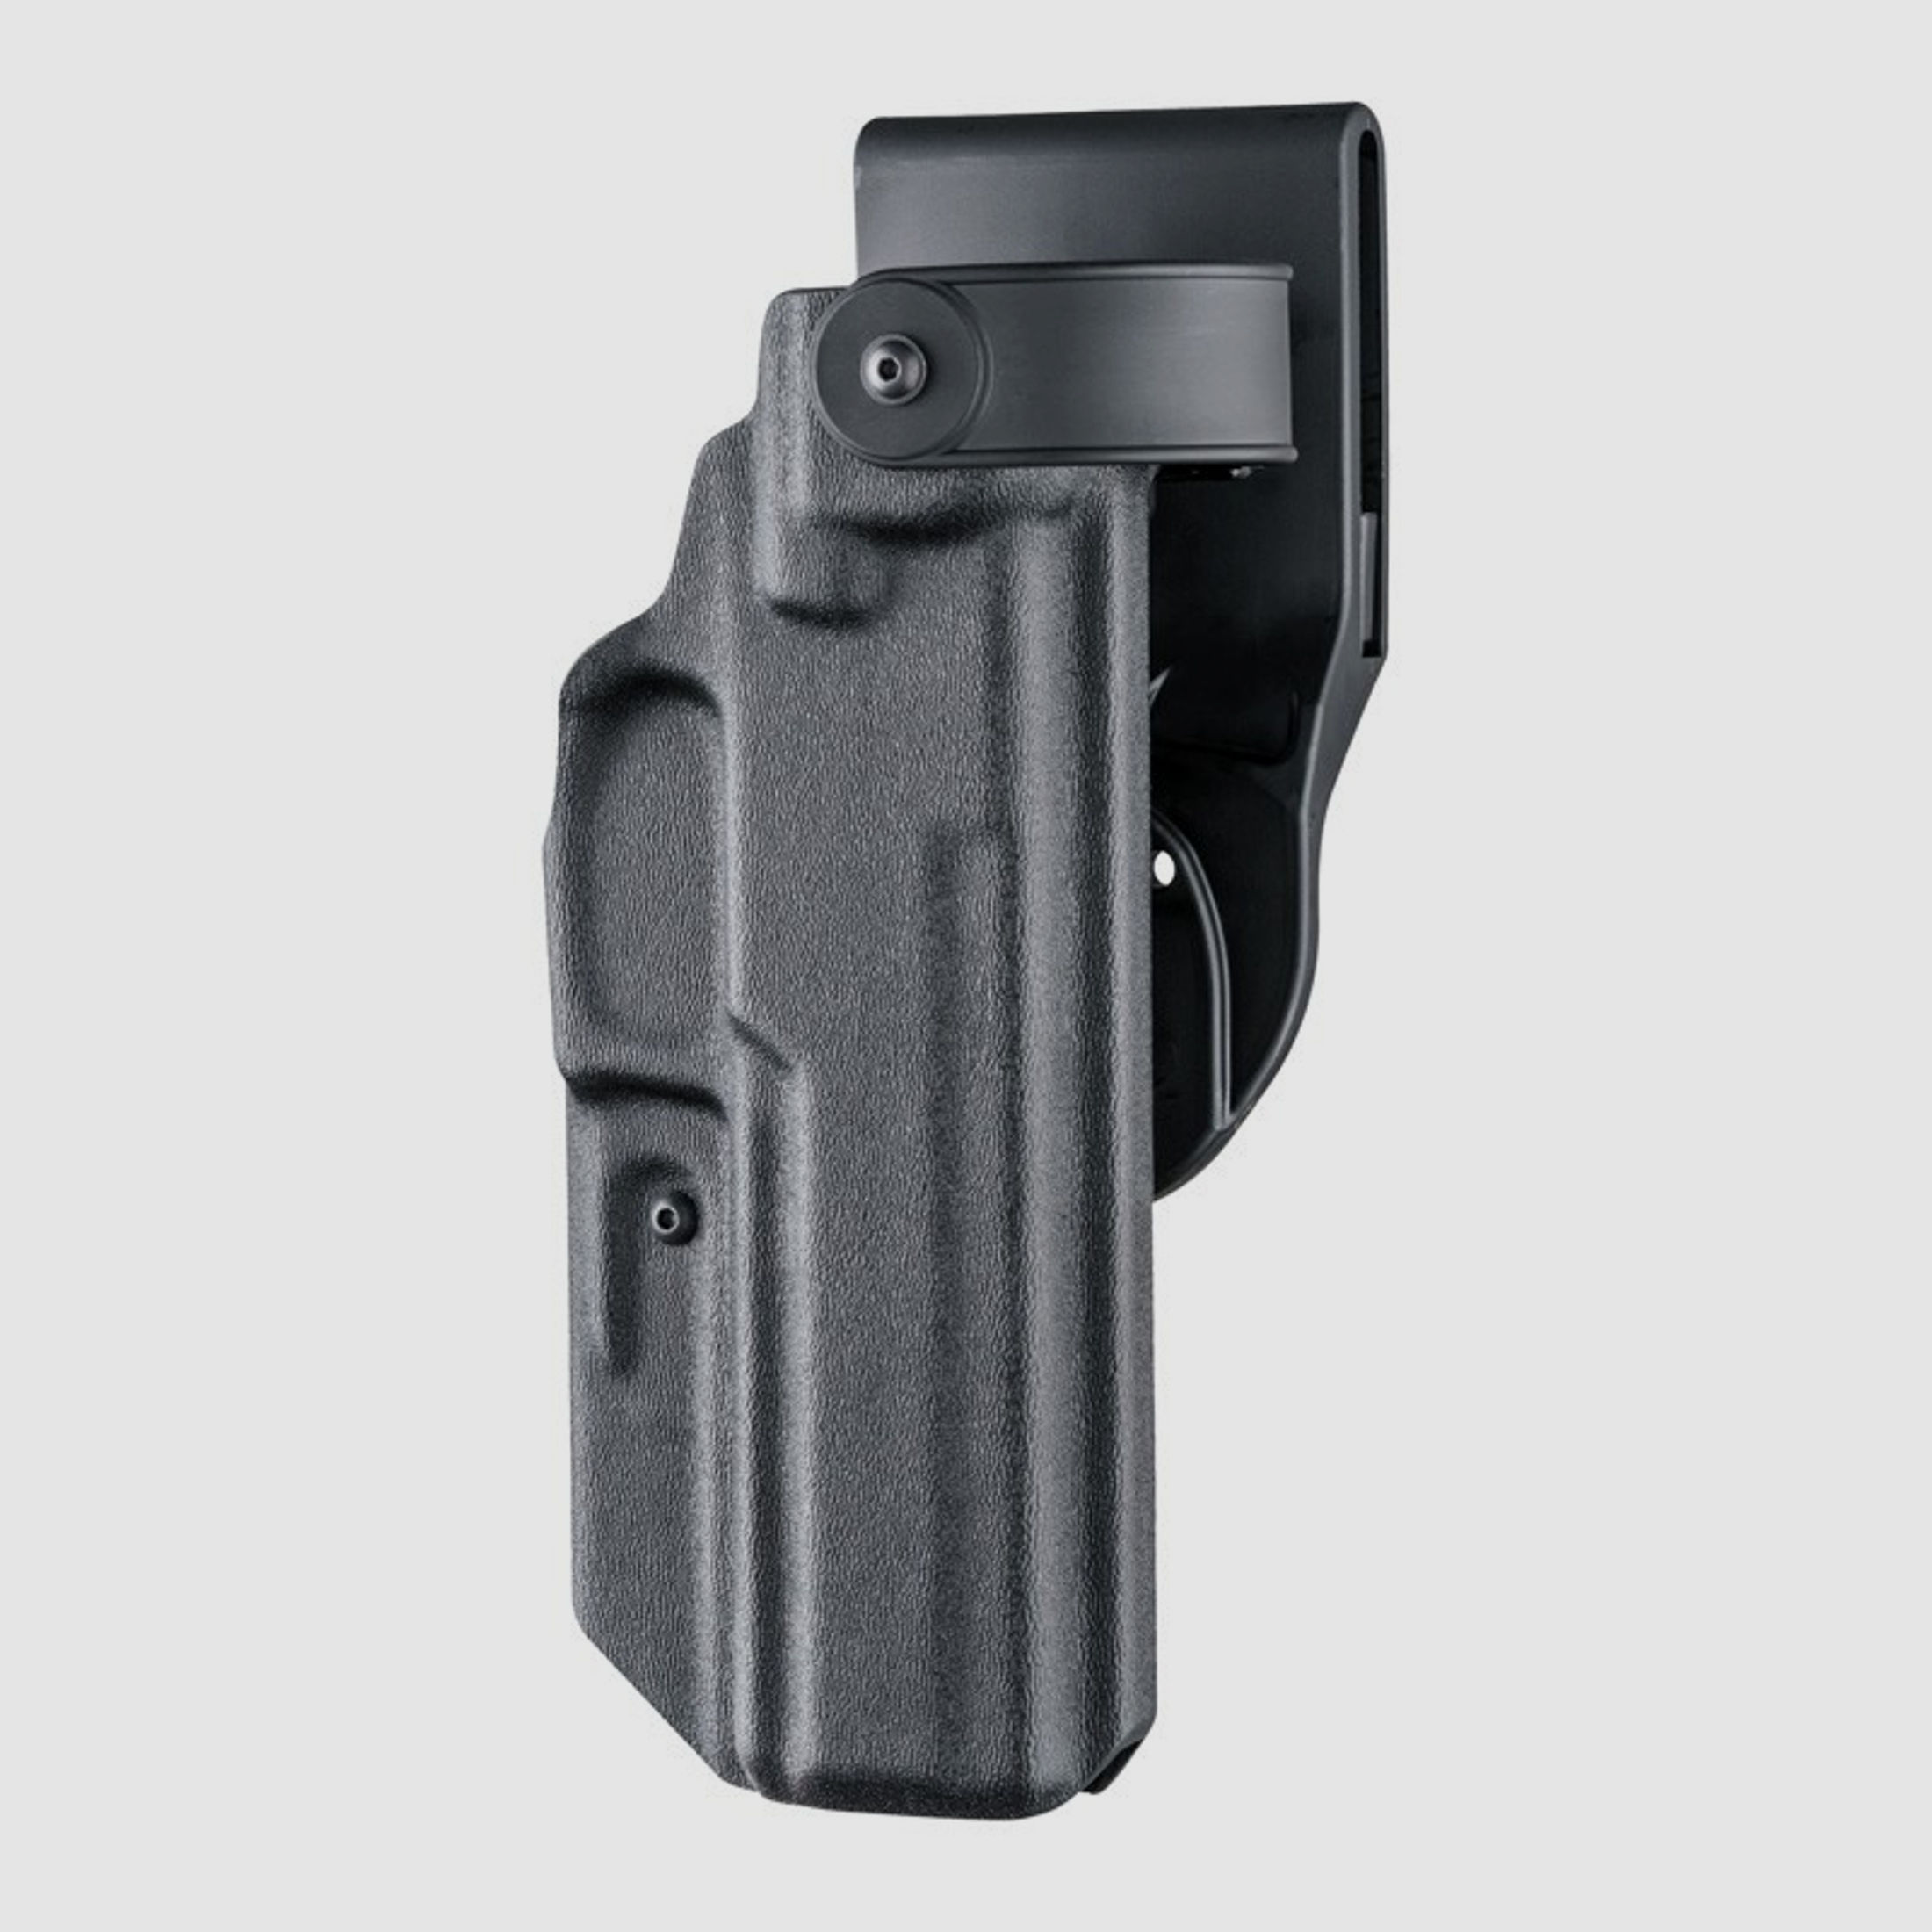 Dienstholster ARS Stage2 Carry Schwarz Level III Linkshänder-Glock 17, 18, 22, 31, 37, 47